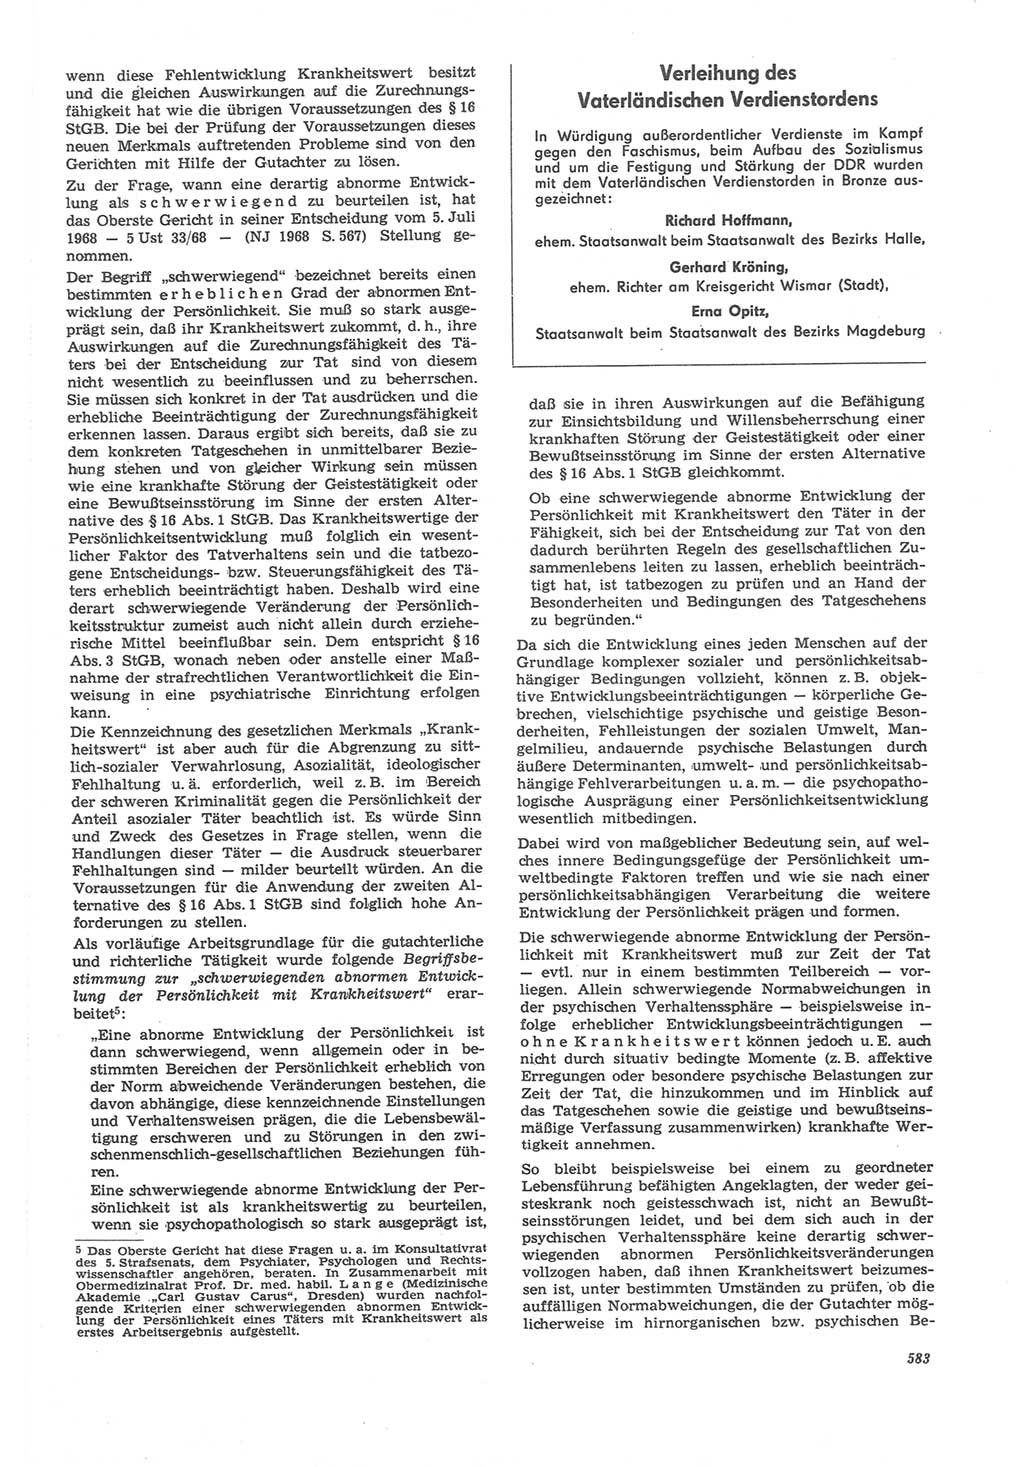 Neue Justiz (NJ), Zeitschrift für Recht und Rechtswissenschaft [Deutsche Demokratische Republik (DDR)], 22. Jahrgang 1968, Seite 583 (NJ DDR 1968, S. 583)